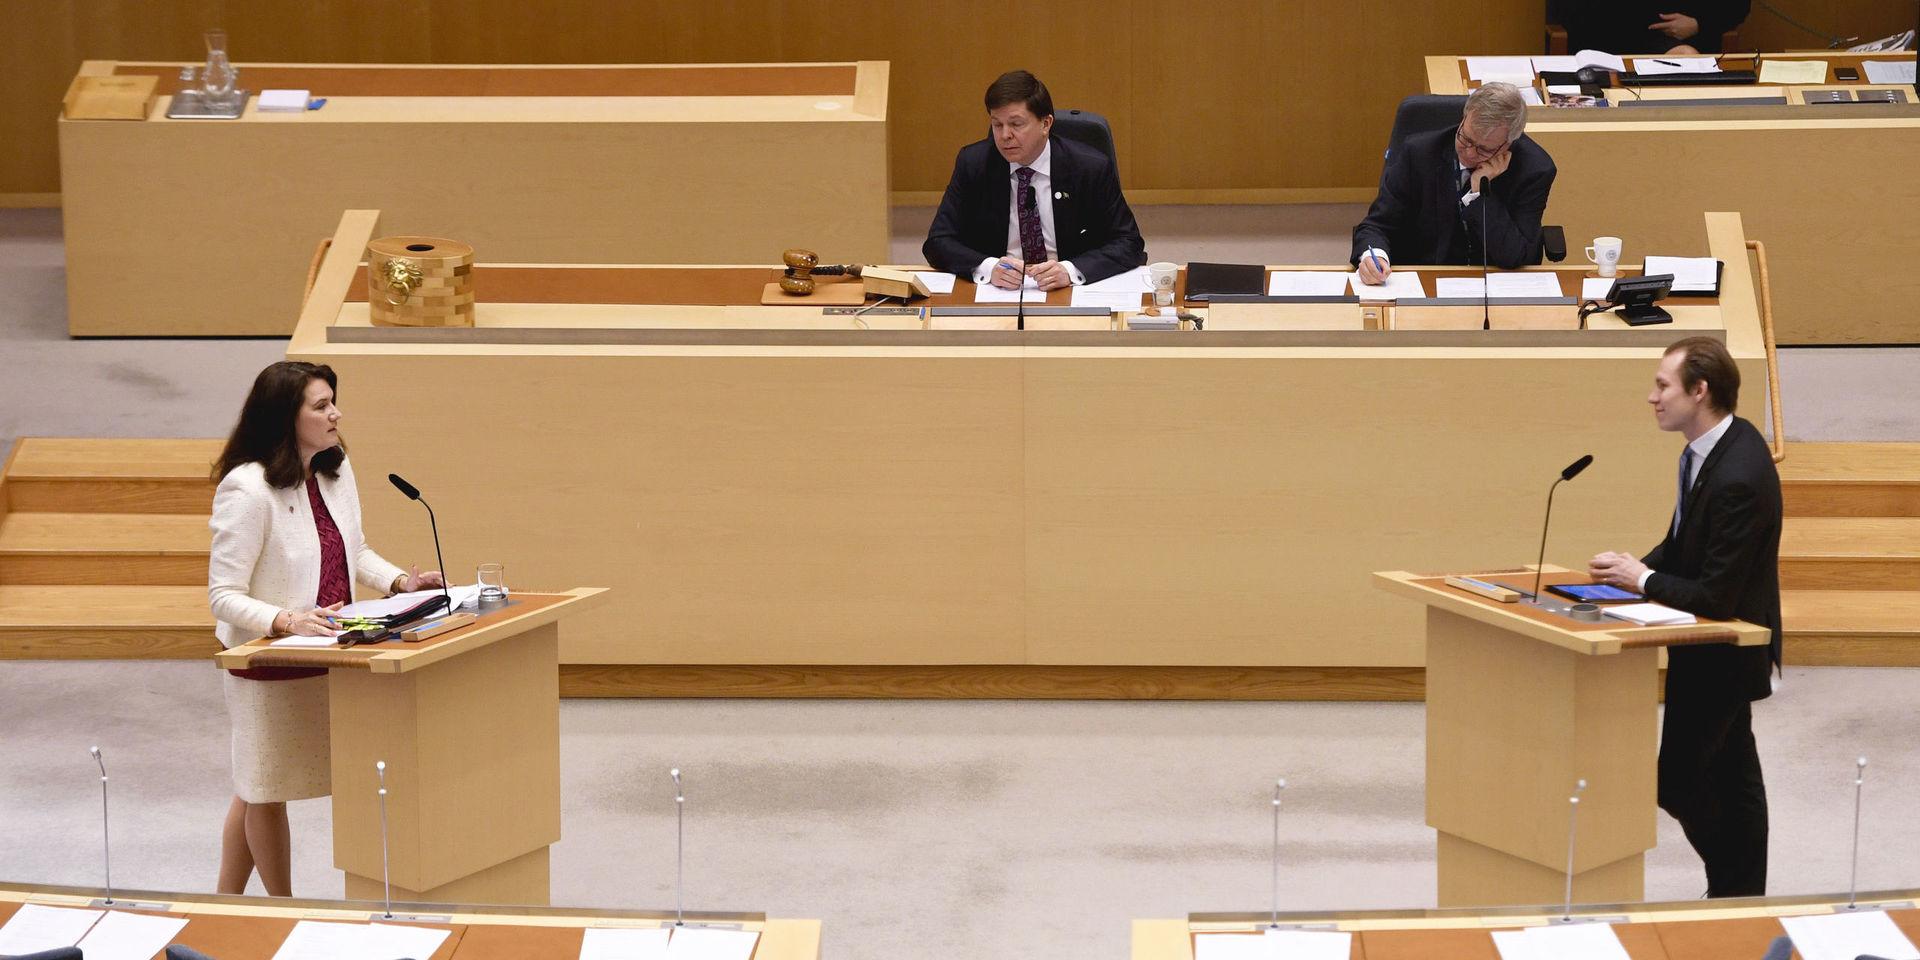 Utrikesminister Ann Linde (S) och Markus Wiechel (SD) debatterar under den utrikespolitiska debatten i riksdagen i Stockholm.